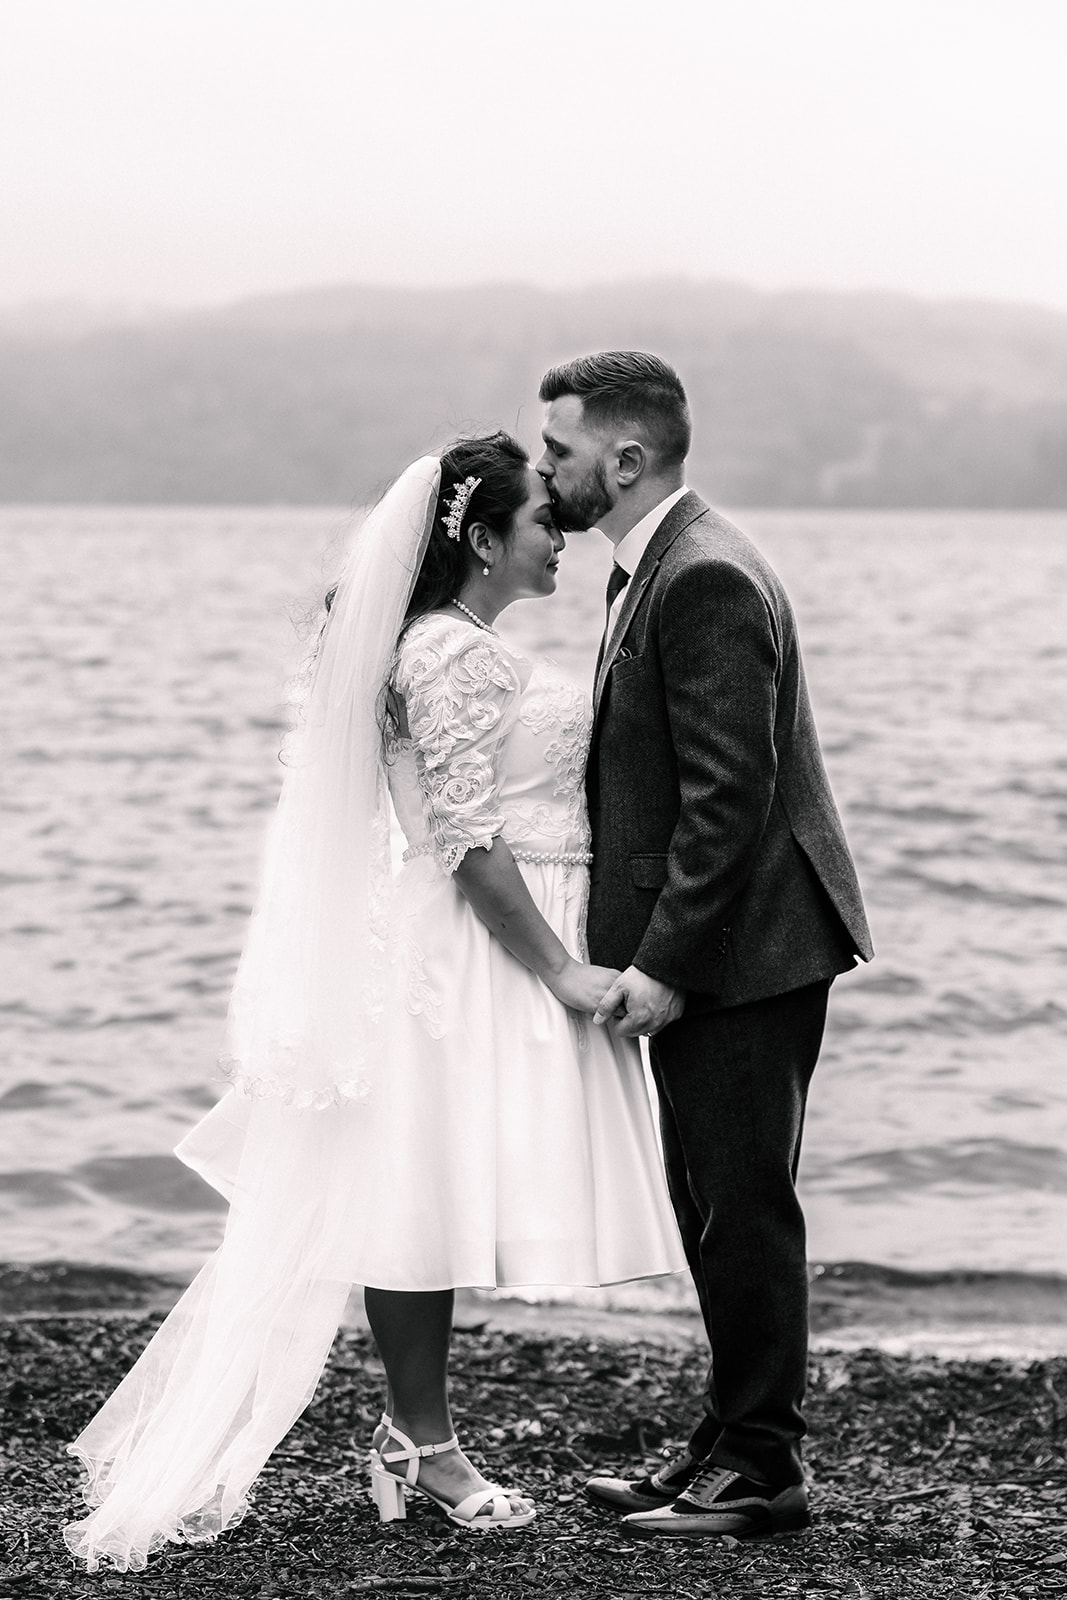 Emotional wedding photograph on Lake Windermere